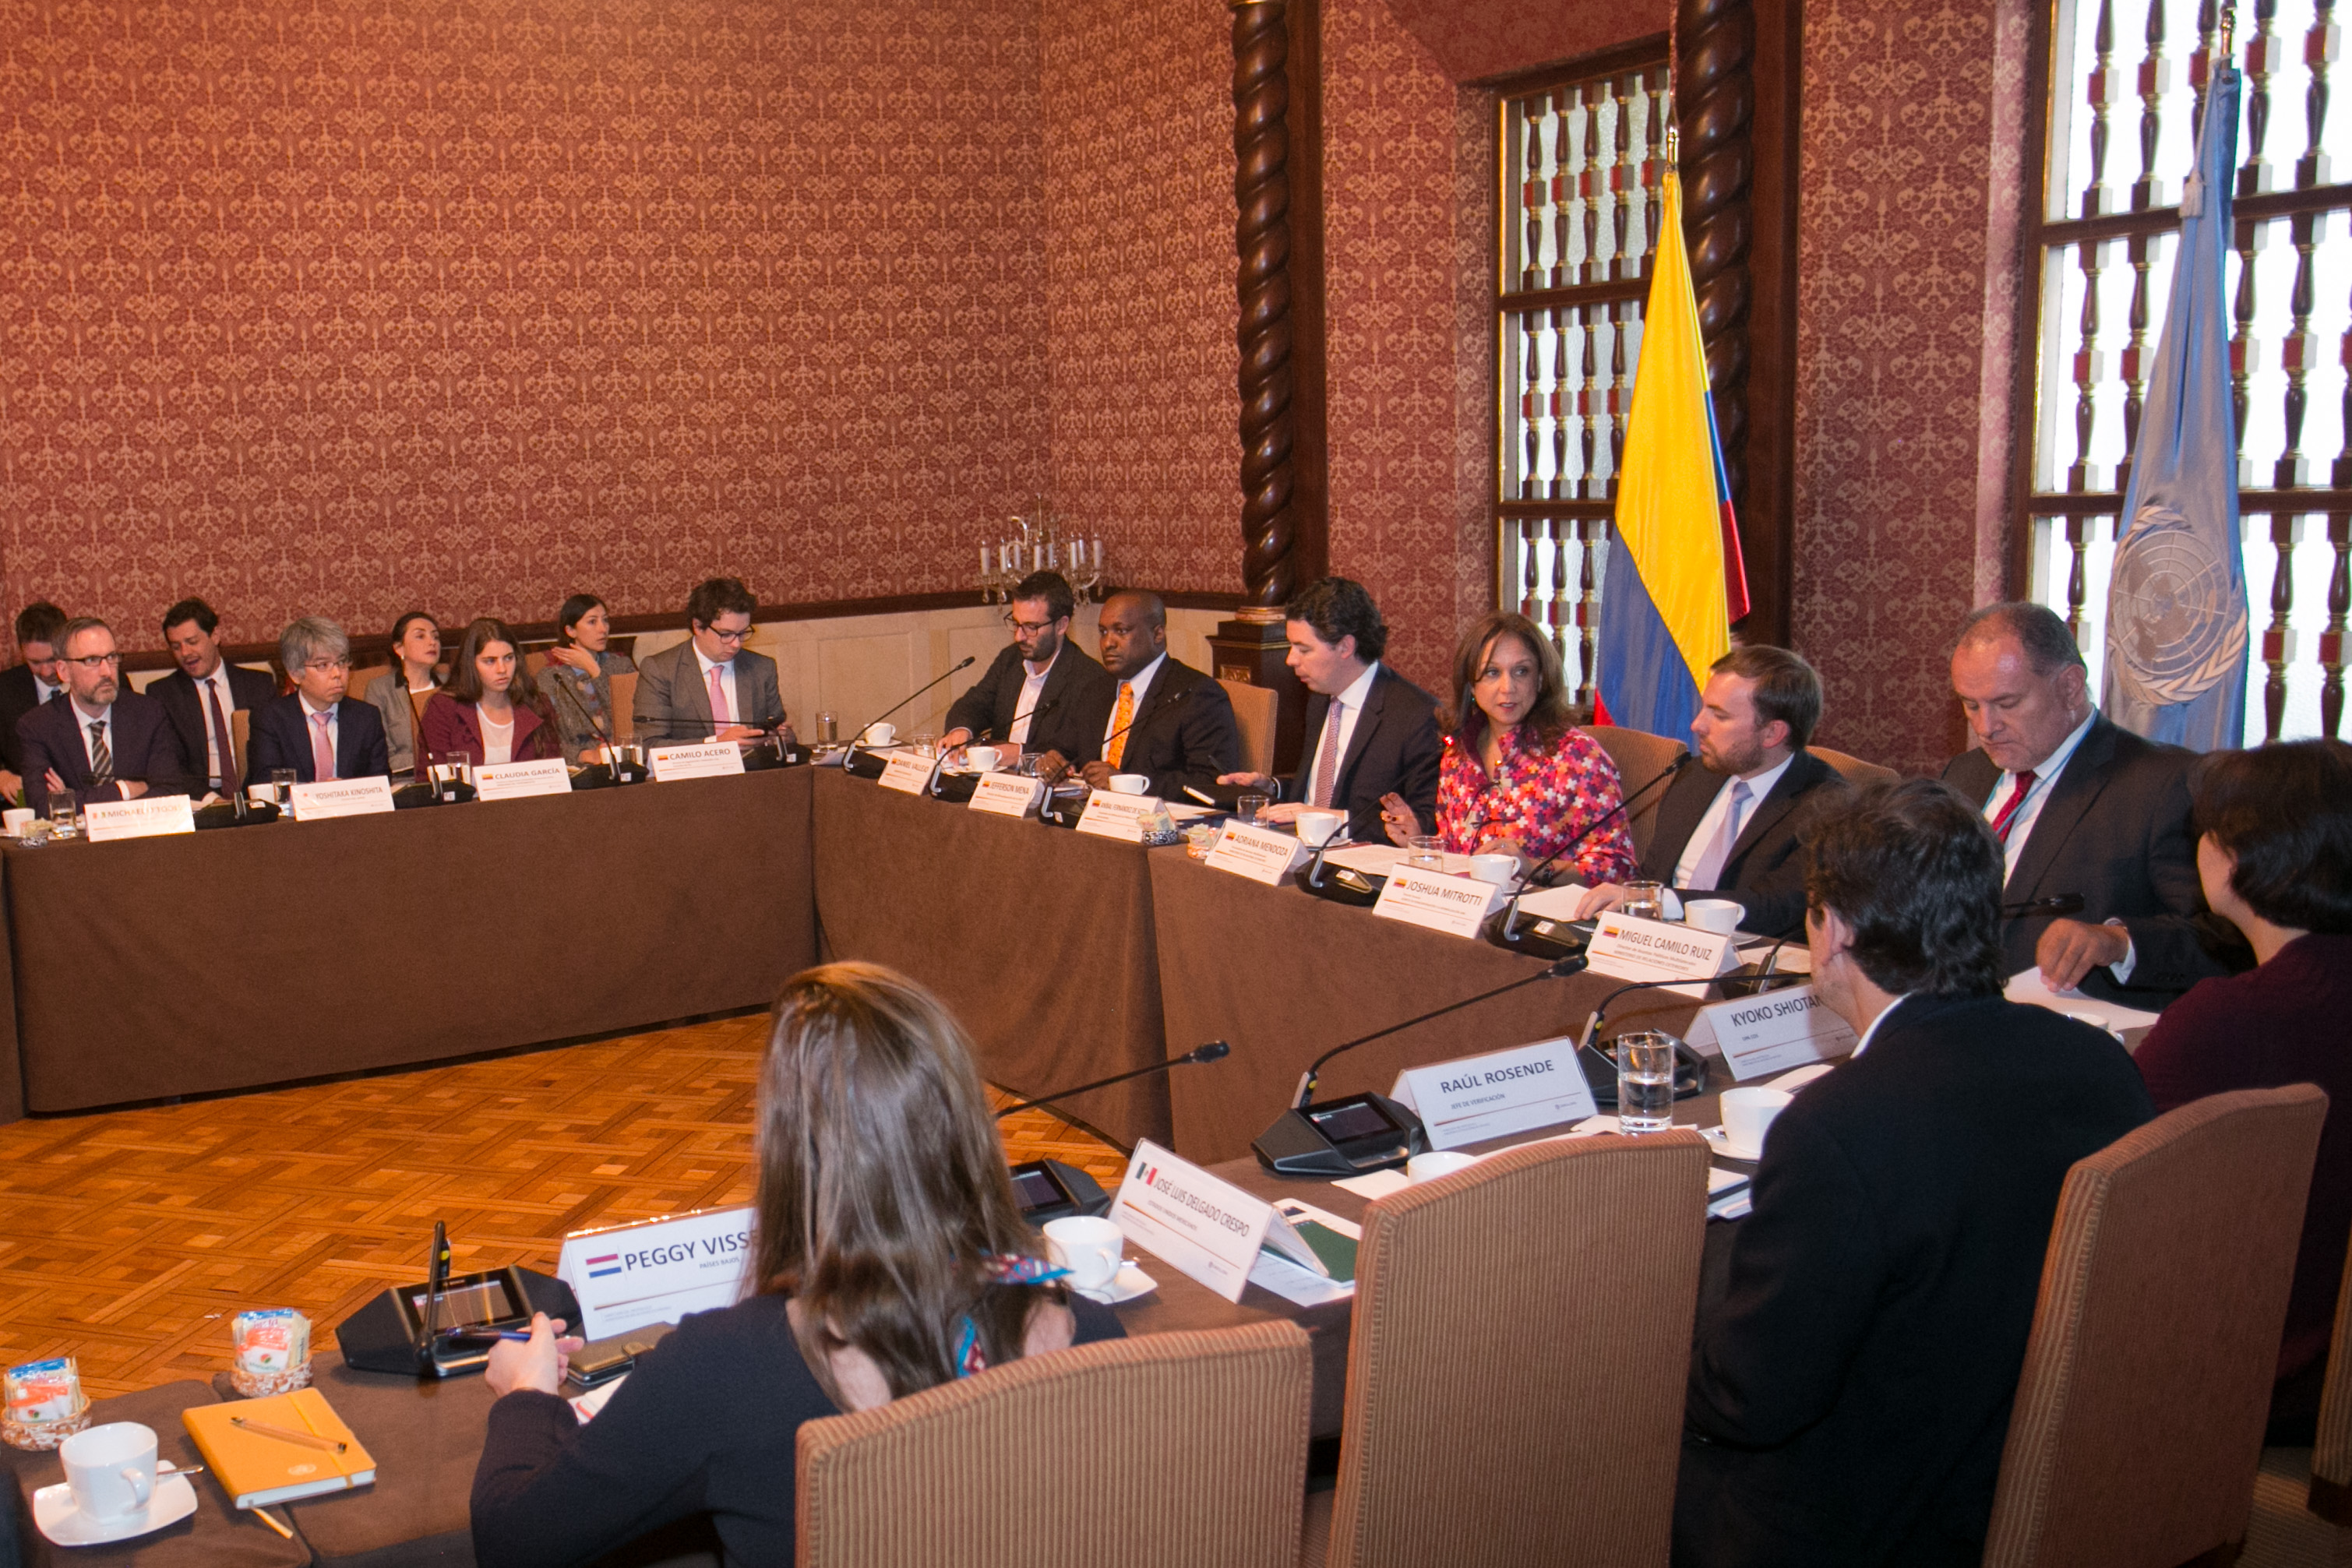 Delegados de la Dirección de Asuntos Políticos de Naciones Unidas reconocieron los avances en el proceso de implementación del proceso de paz en Colombia